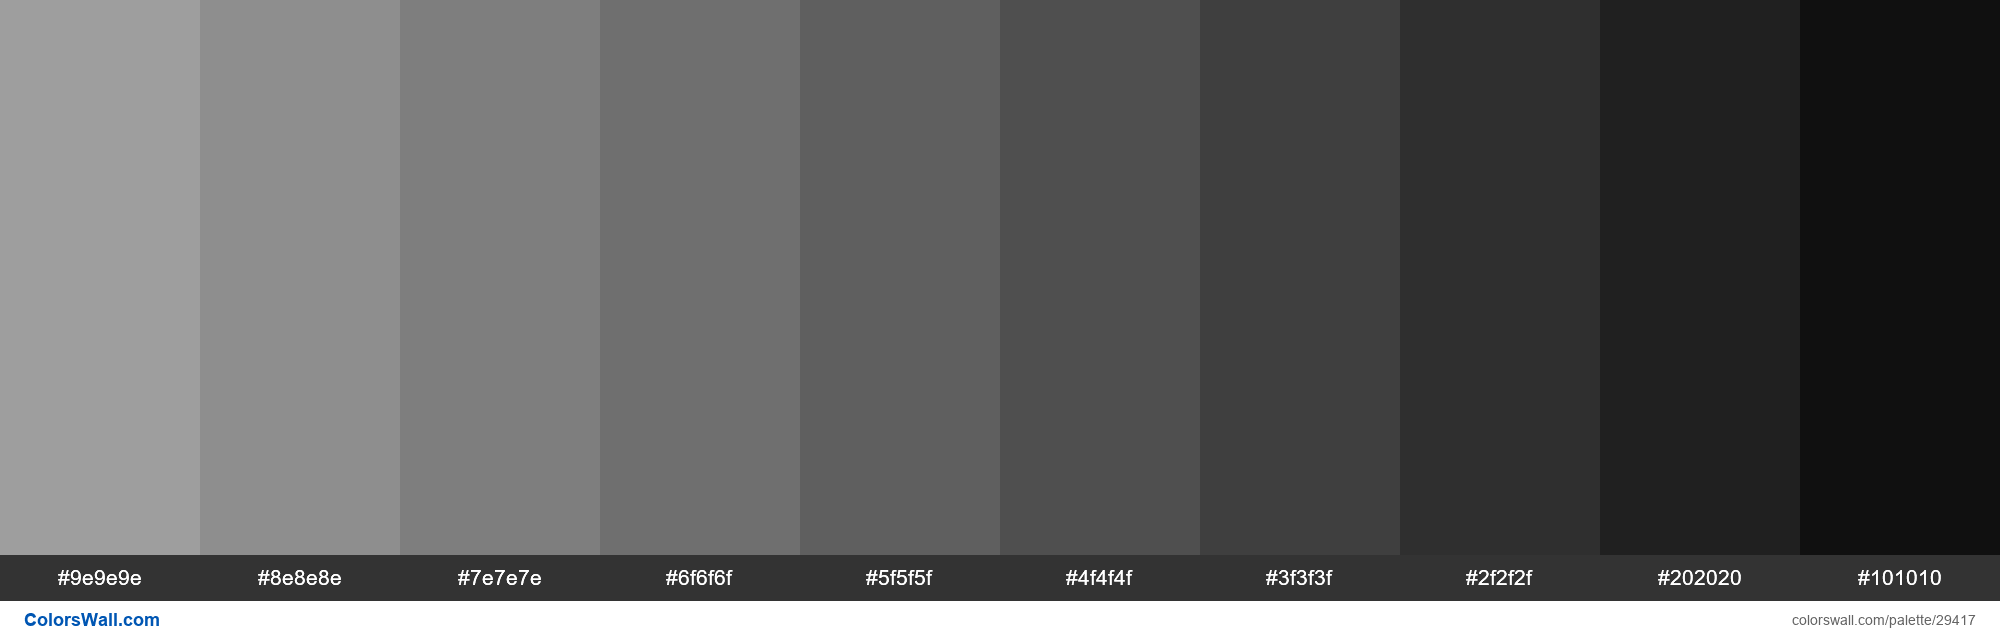 Shades Of Material Design Gray Color 9e9e9e Hex 29417 Colorswall 